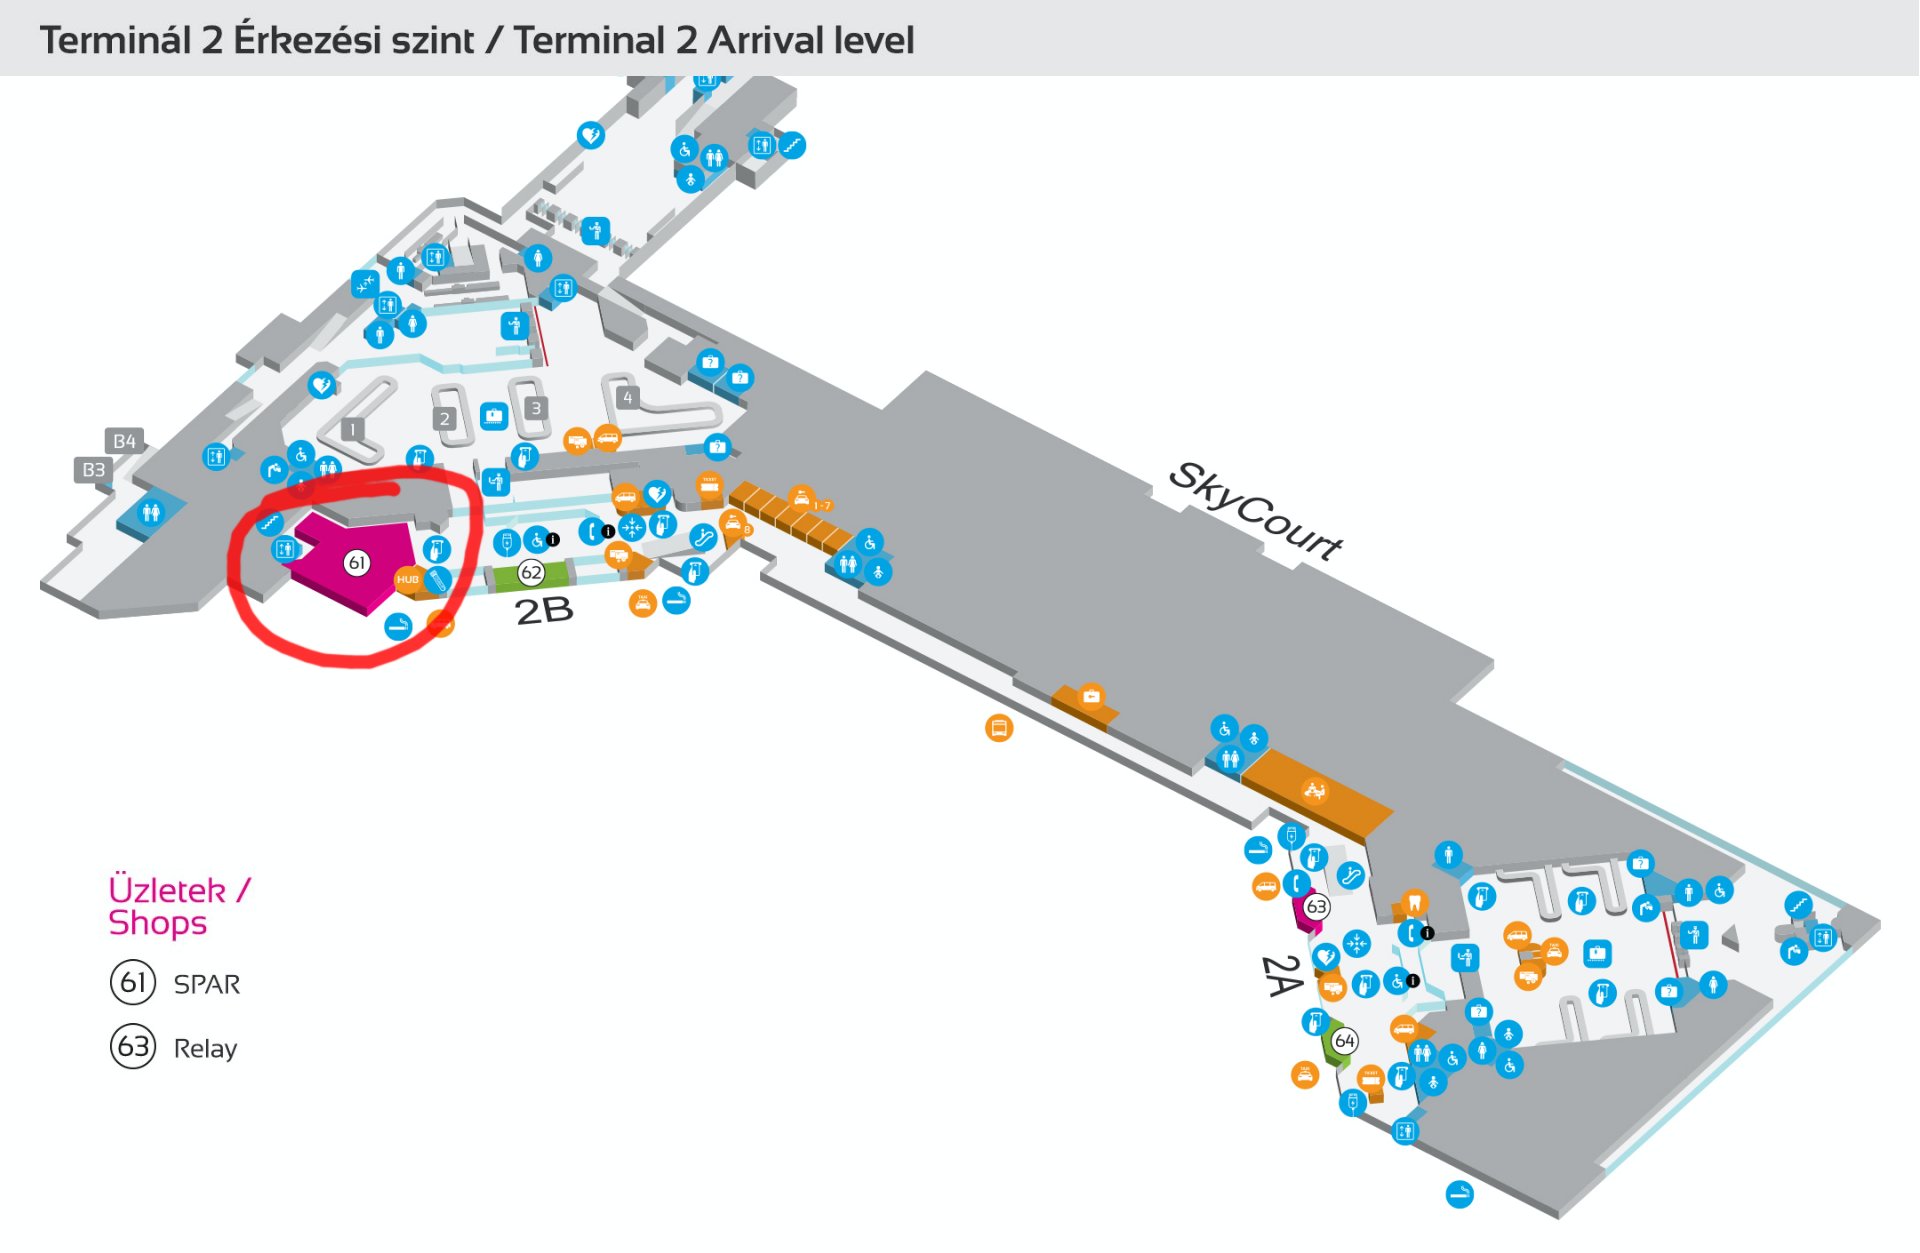 Ferihegyi repülőtér 2B terminál érkezési szintje